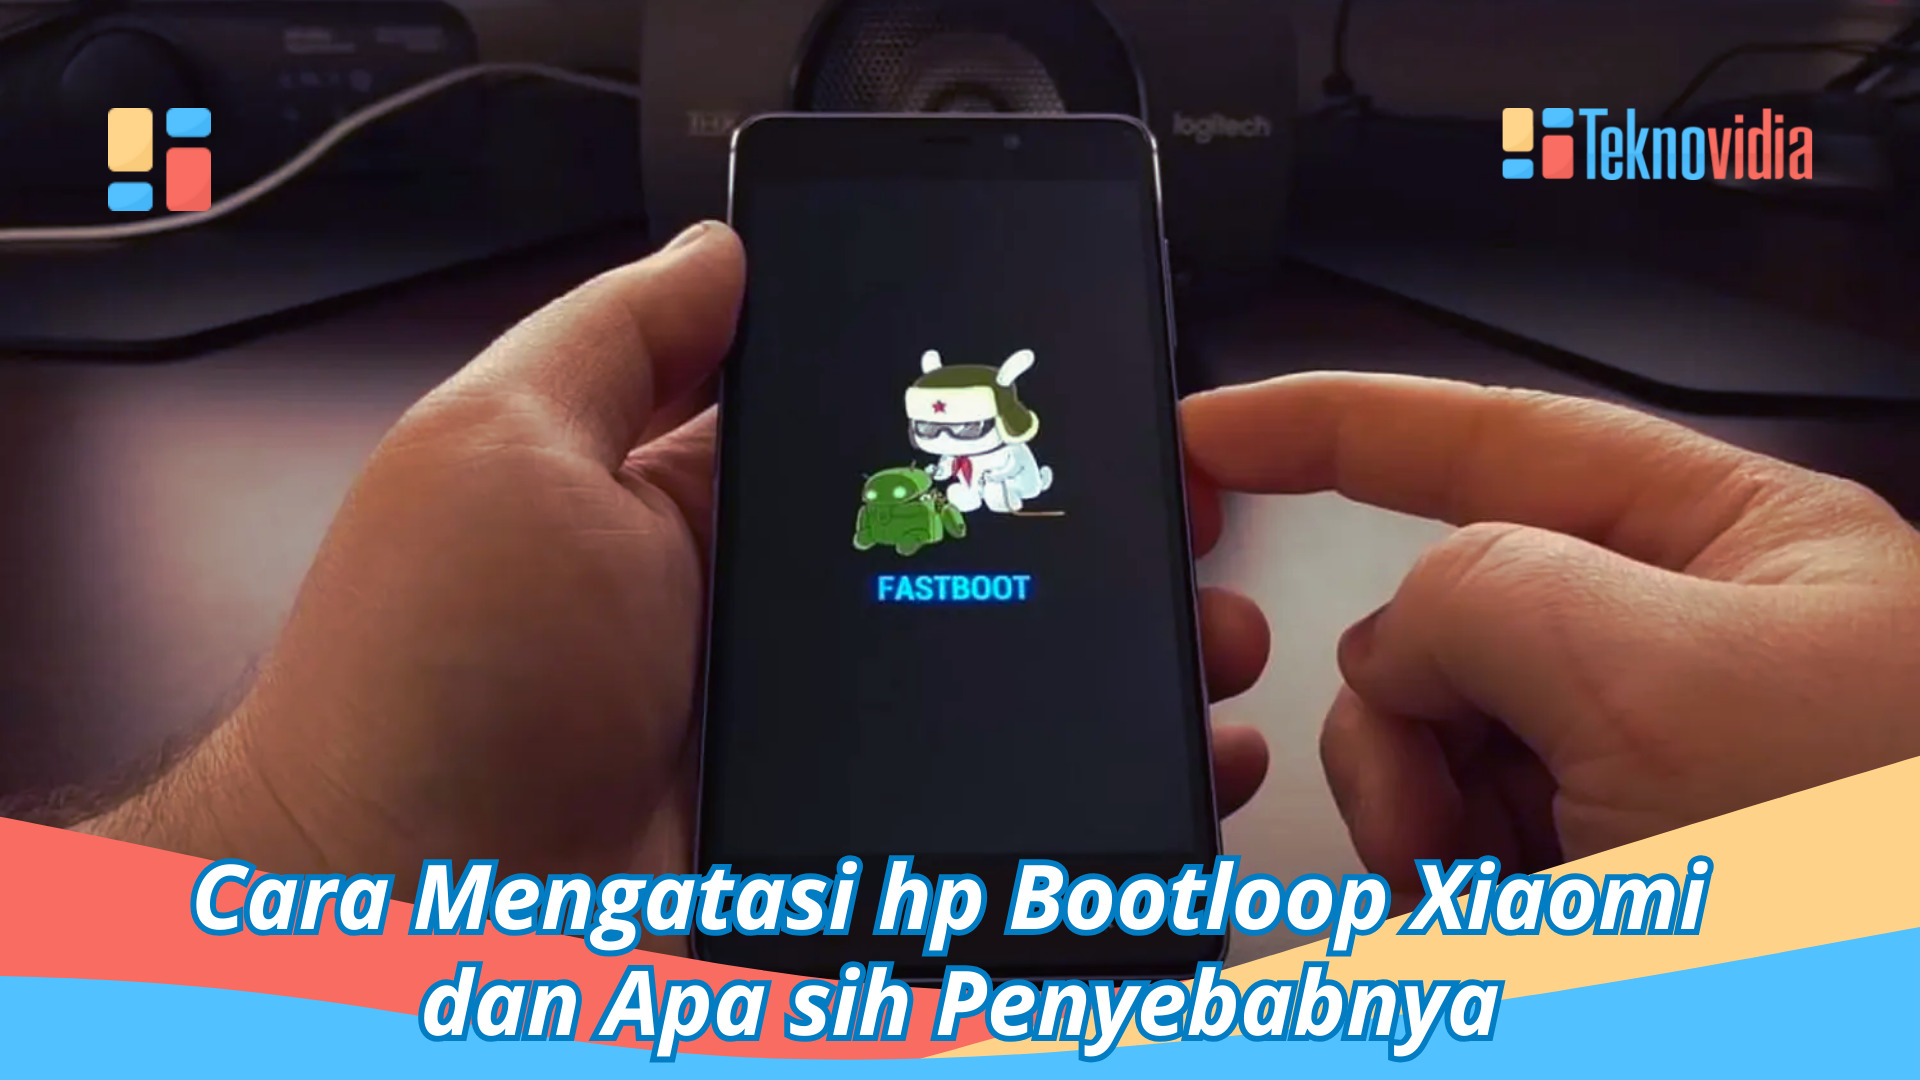 Cara Mengatasi hp Bootloop Xiaomi